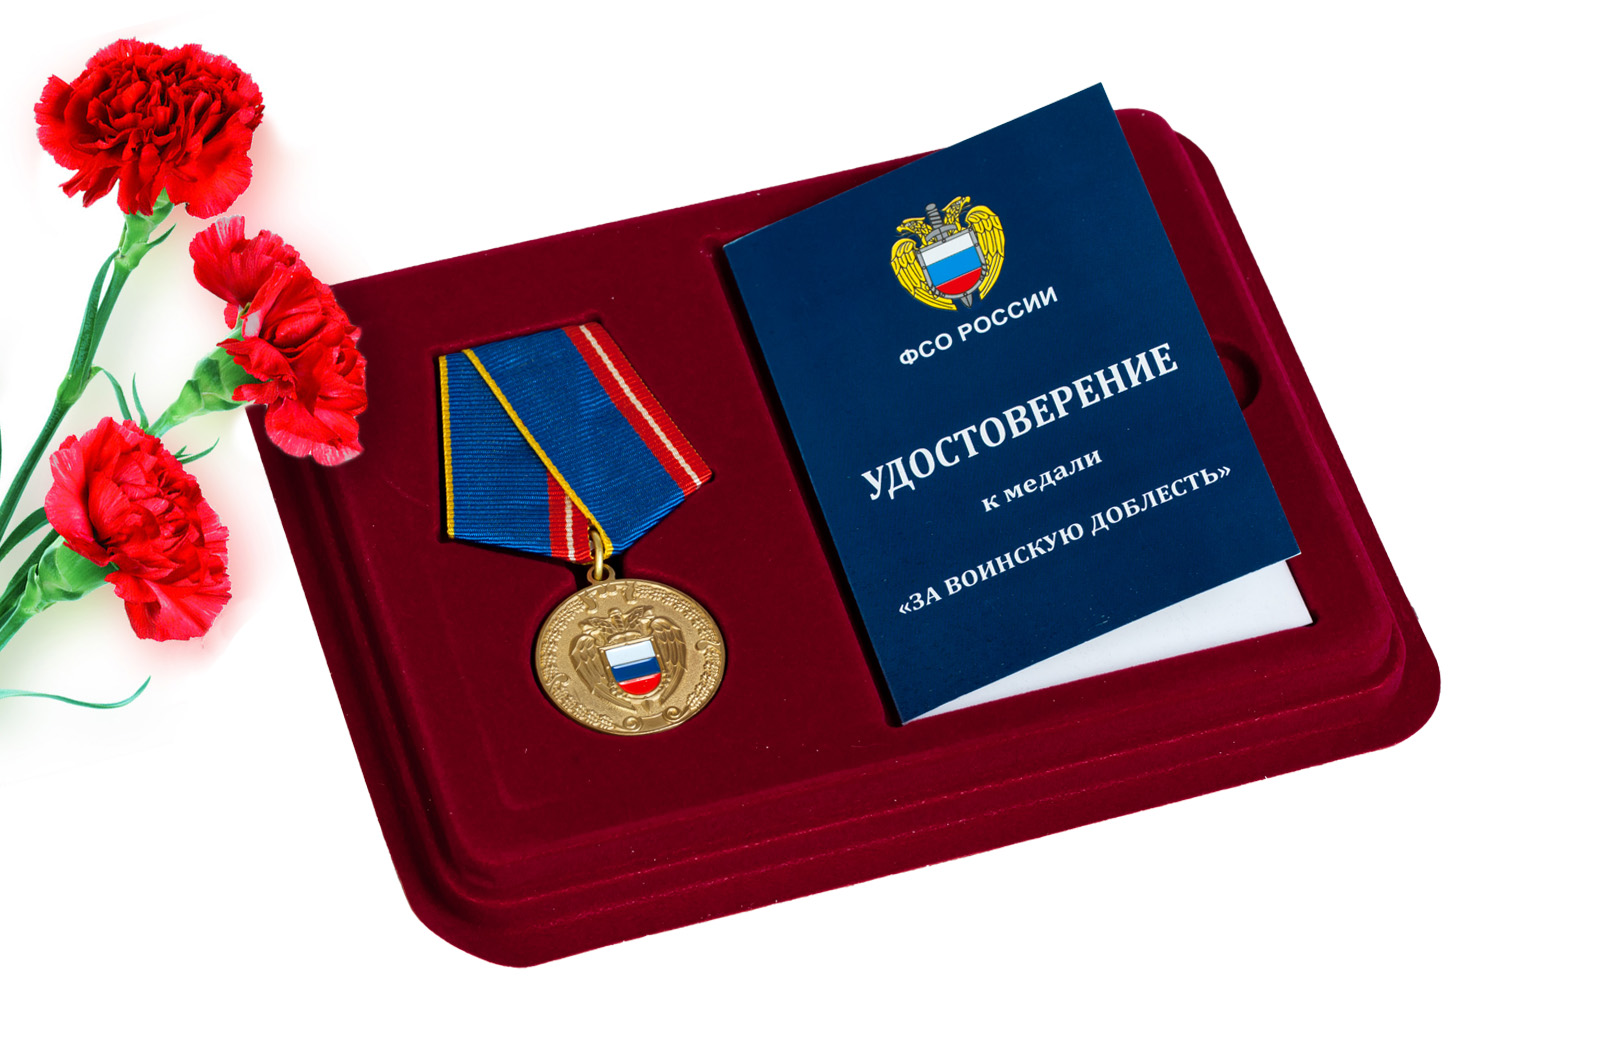 Купить медаль ФСО РФ За воинскую доблесть оптом или в розницу